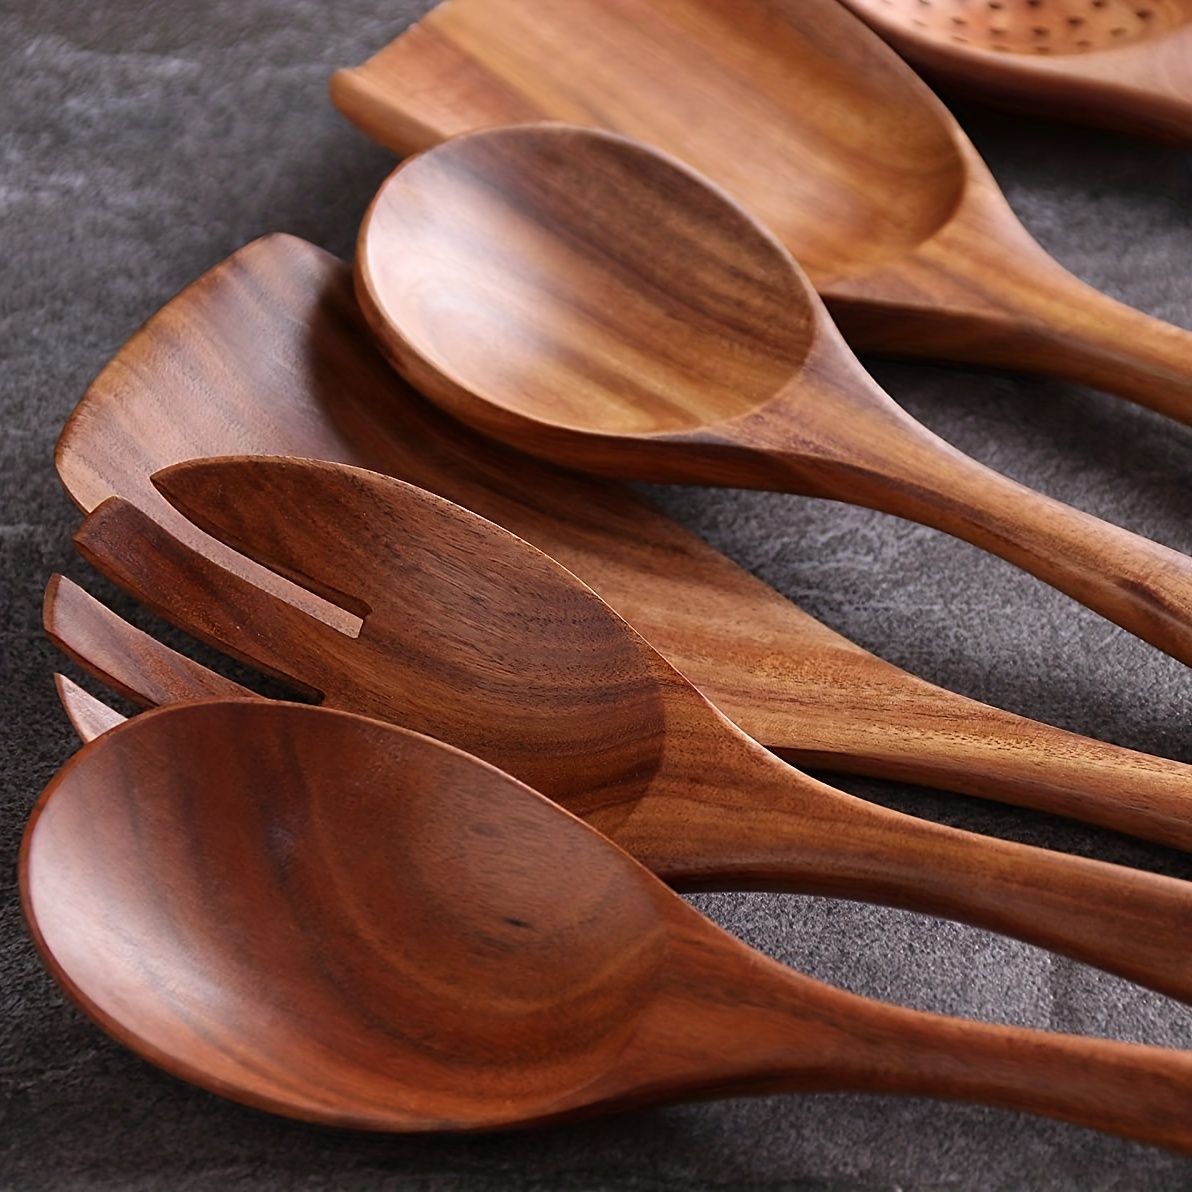 Juego de utensilios de cocina de madera, cucharas de madera para cocinar –  8 piezas de madera de coc…Ver más Juego de utensilios de cocina de madera